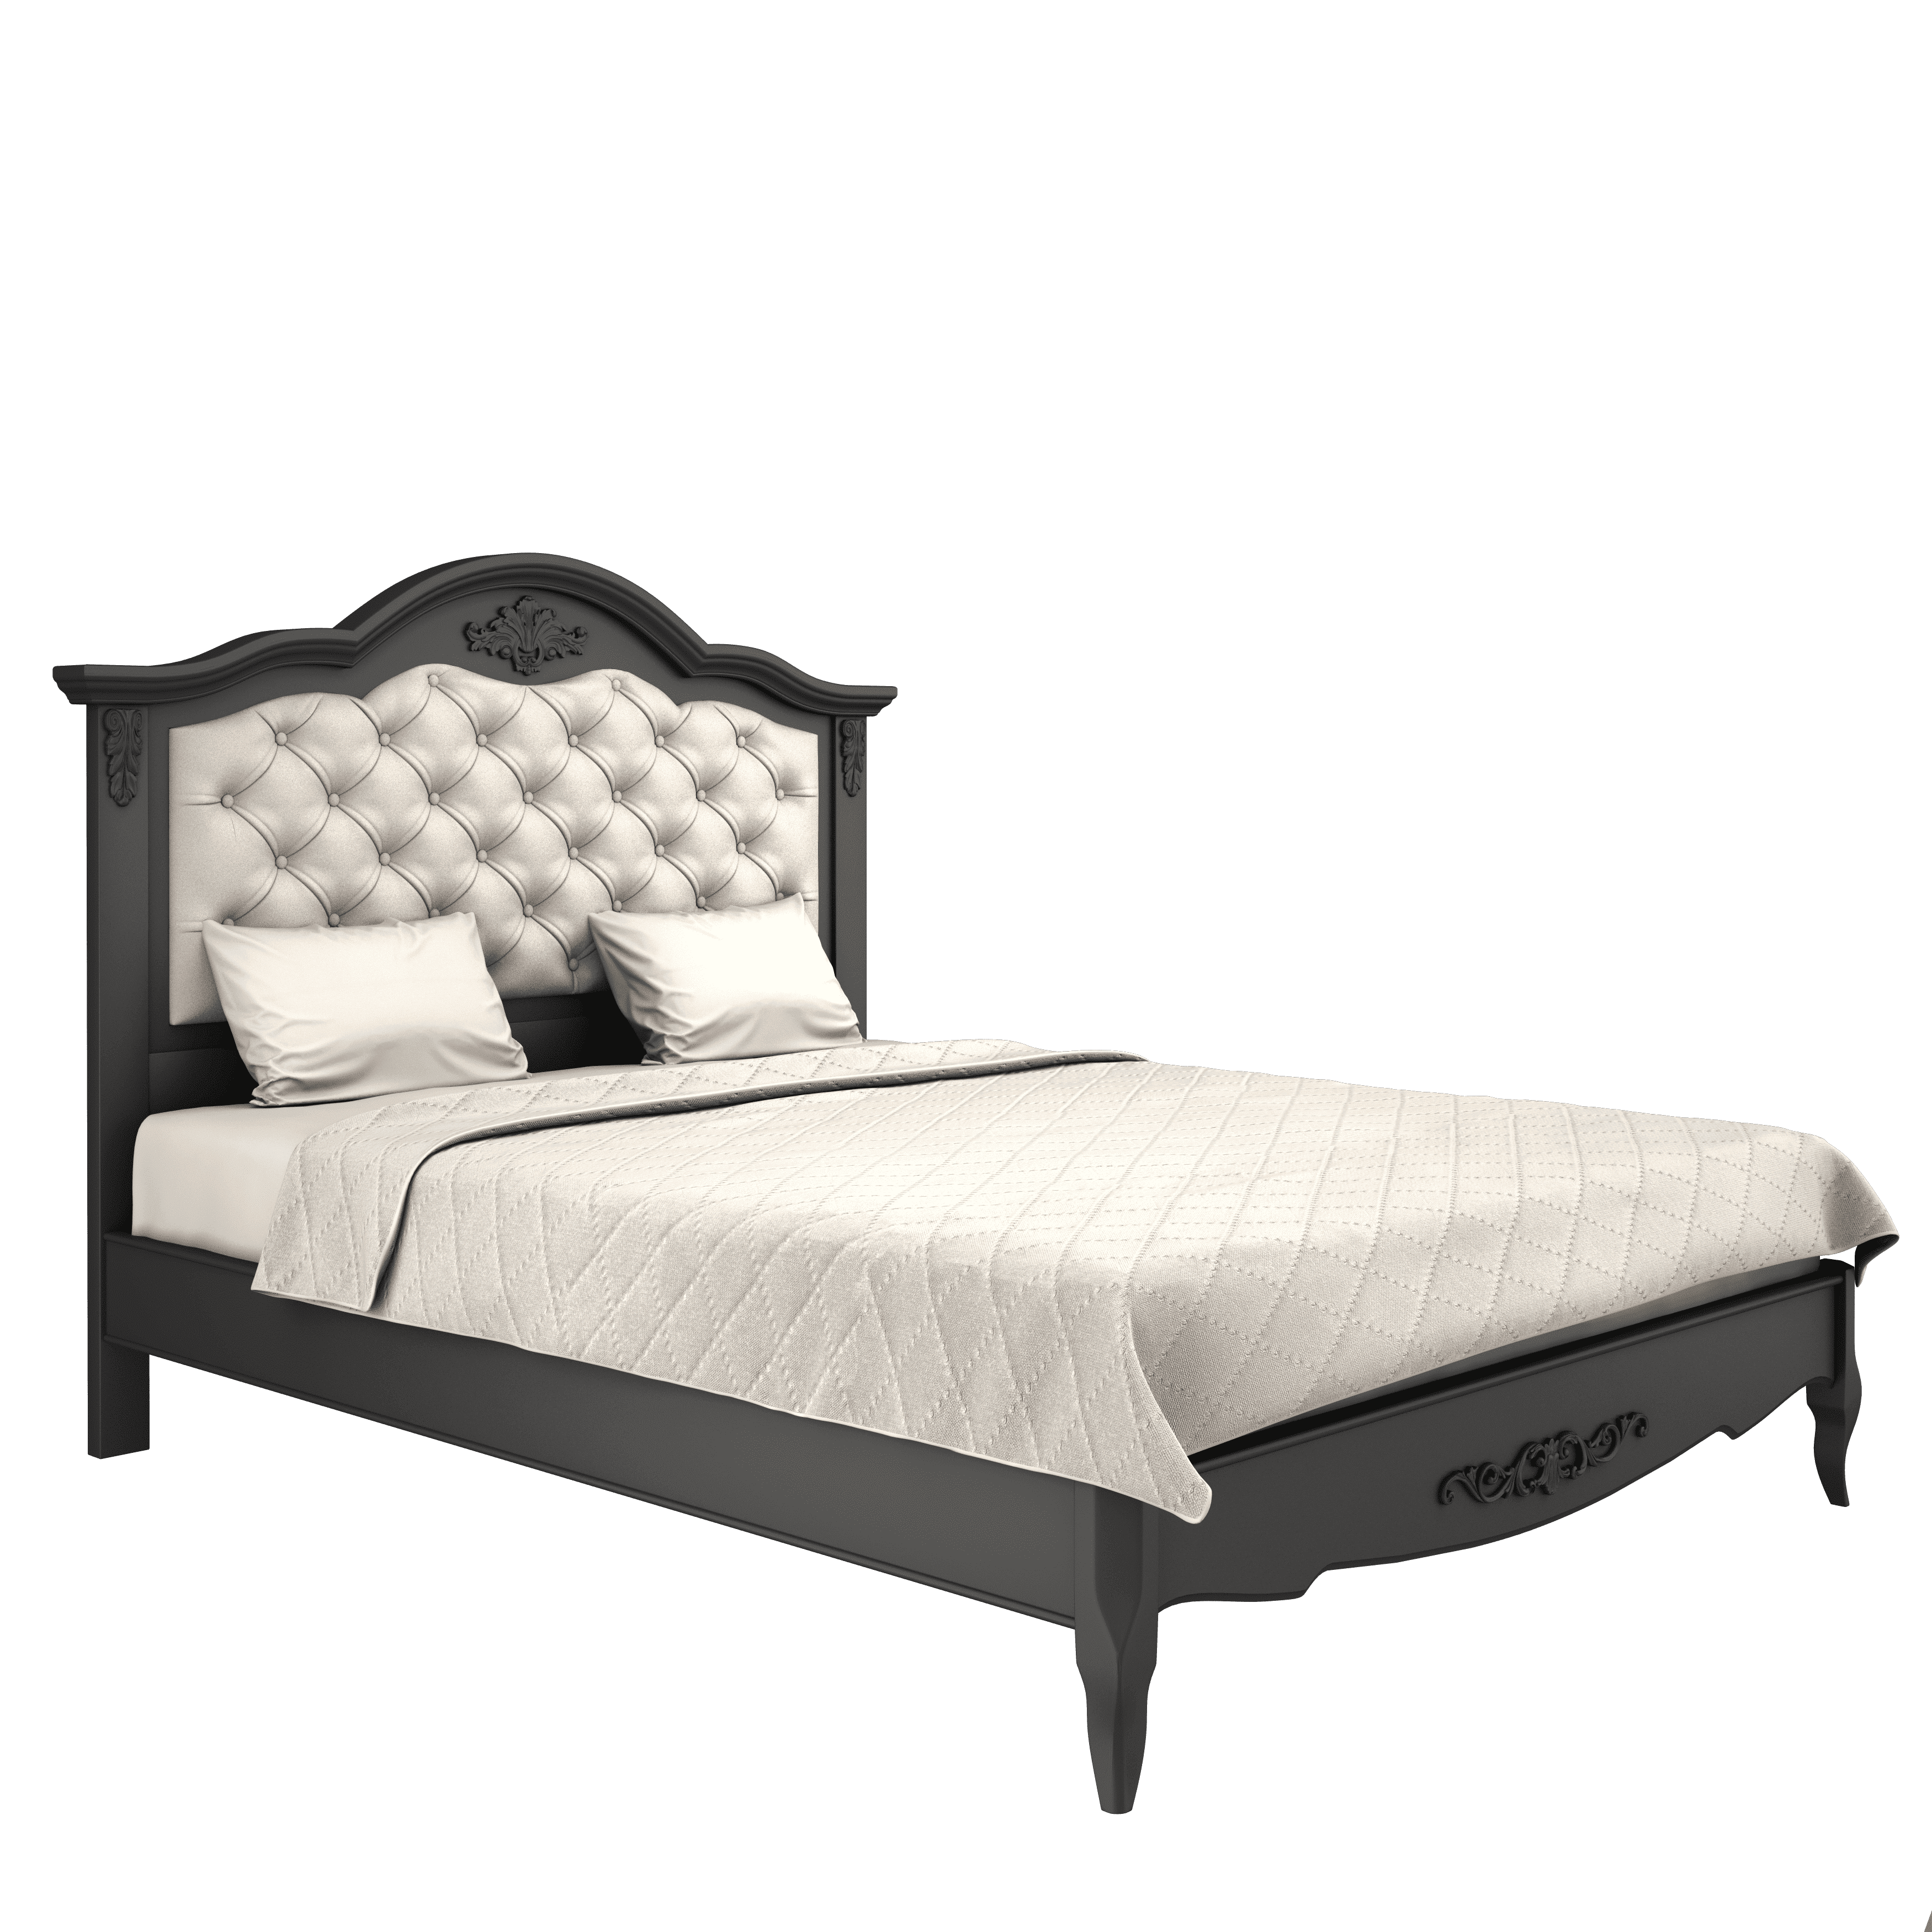 Кровать Aletan Provence, полуторная, 140x200 см, цвет: черный (B214BL)B214BL